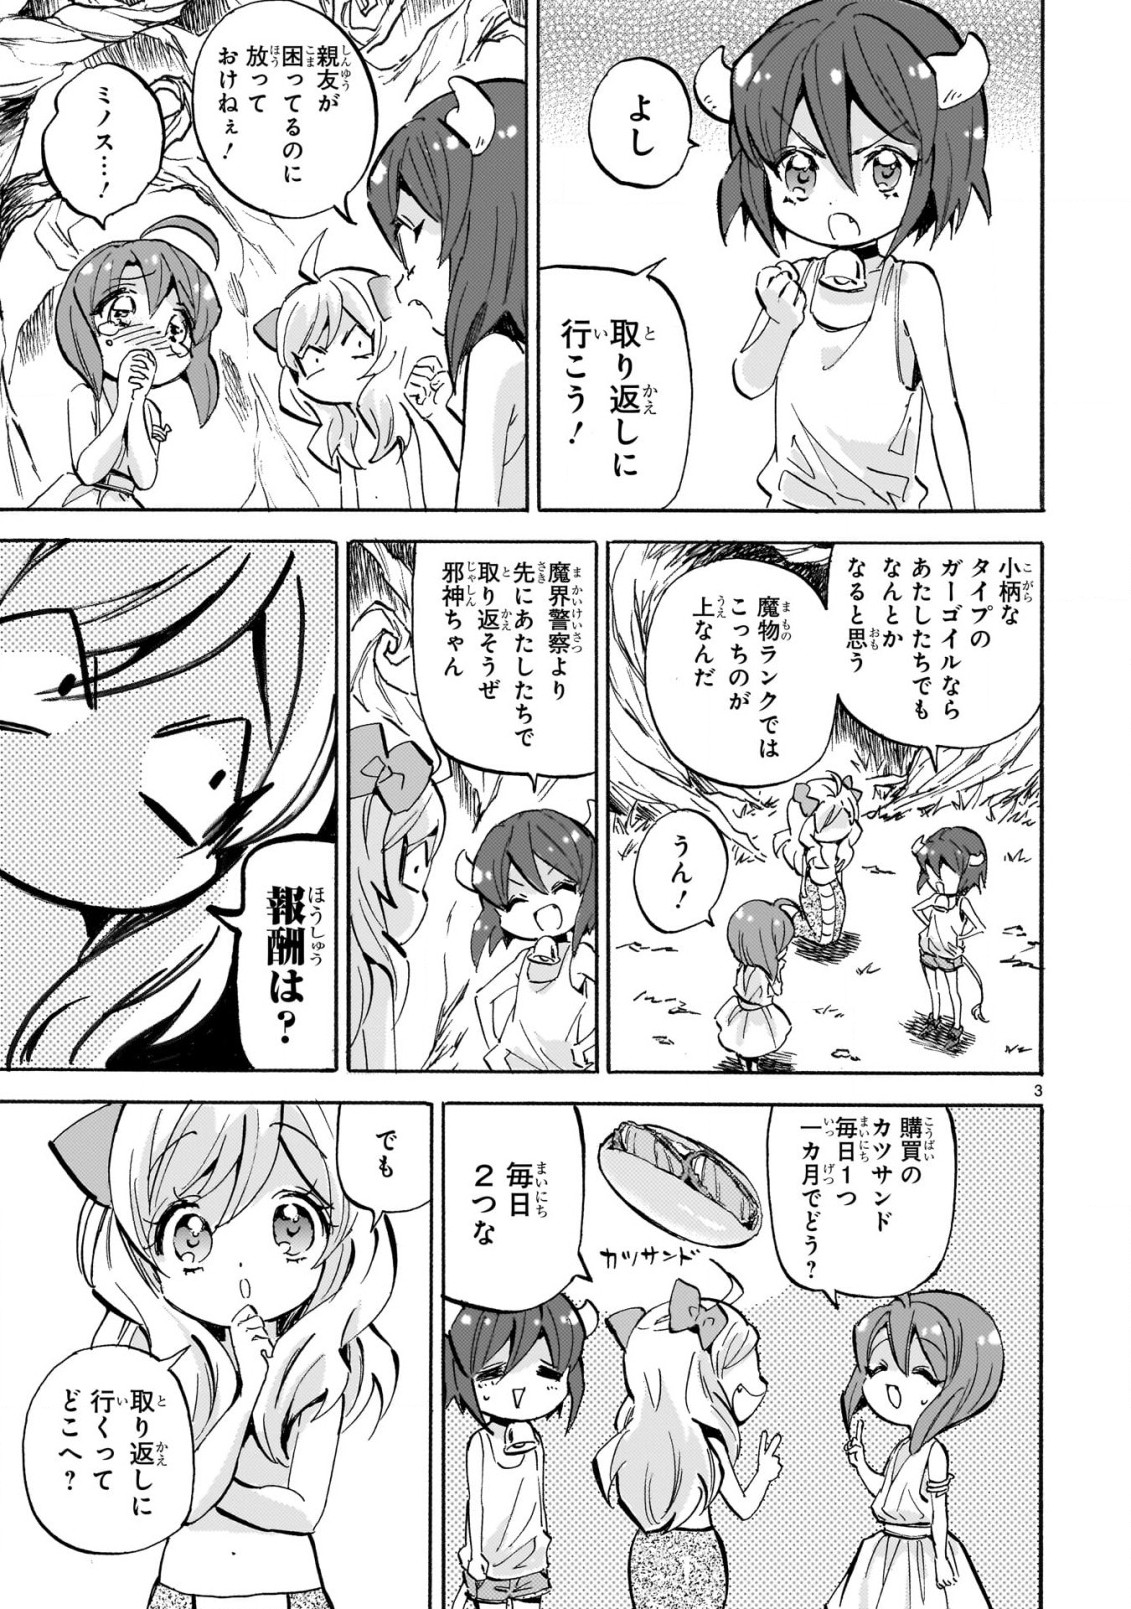 Jashin-chan Dropkick - Chapter 229 - Page 3